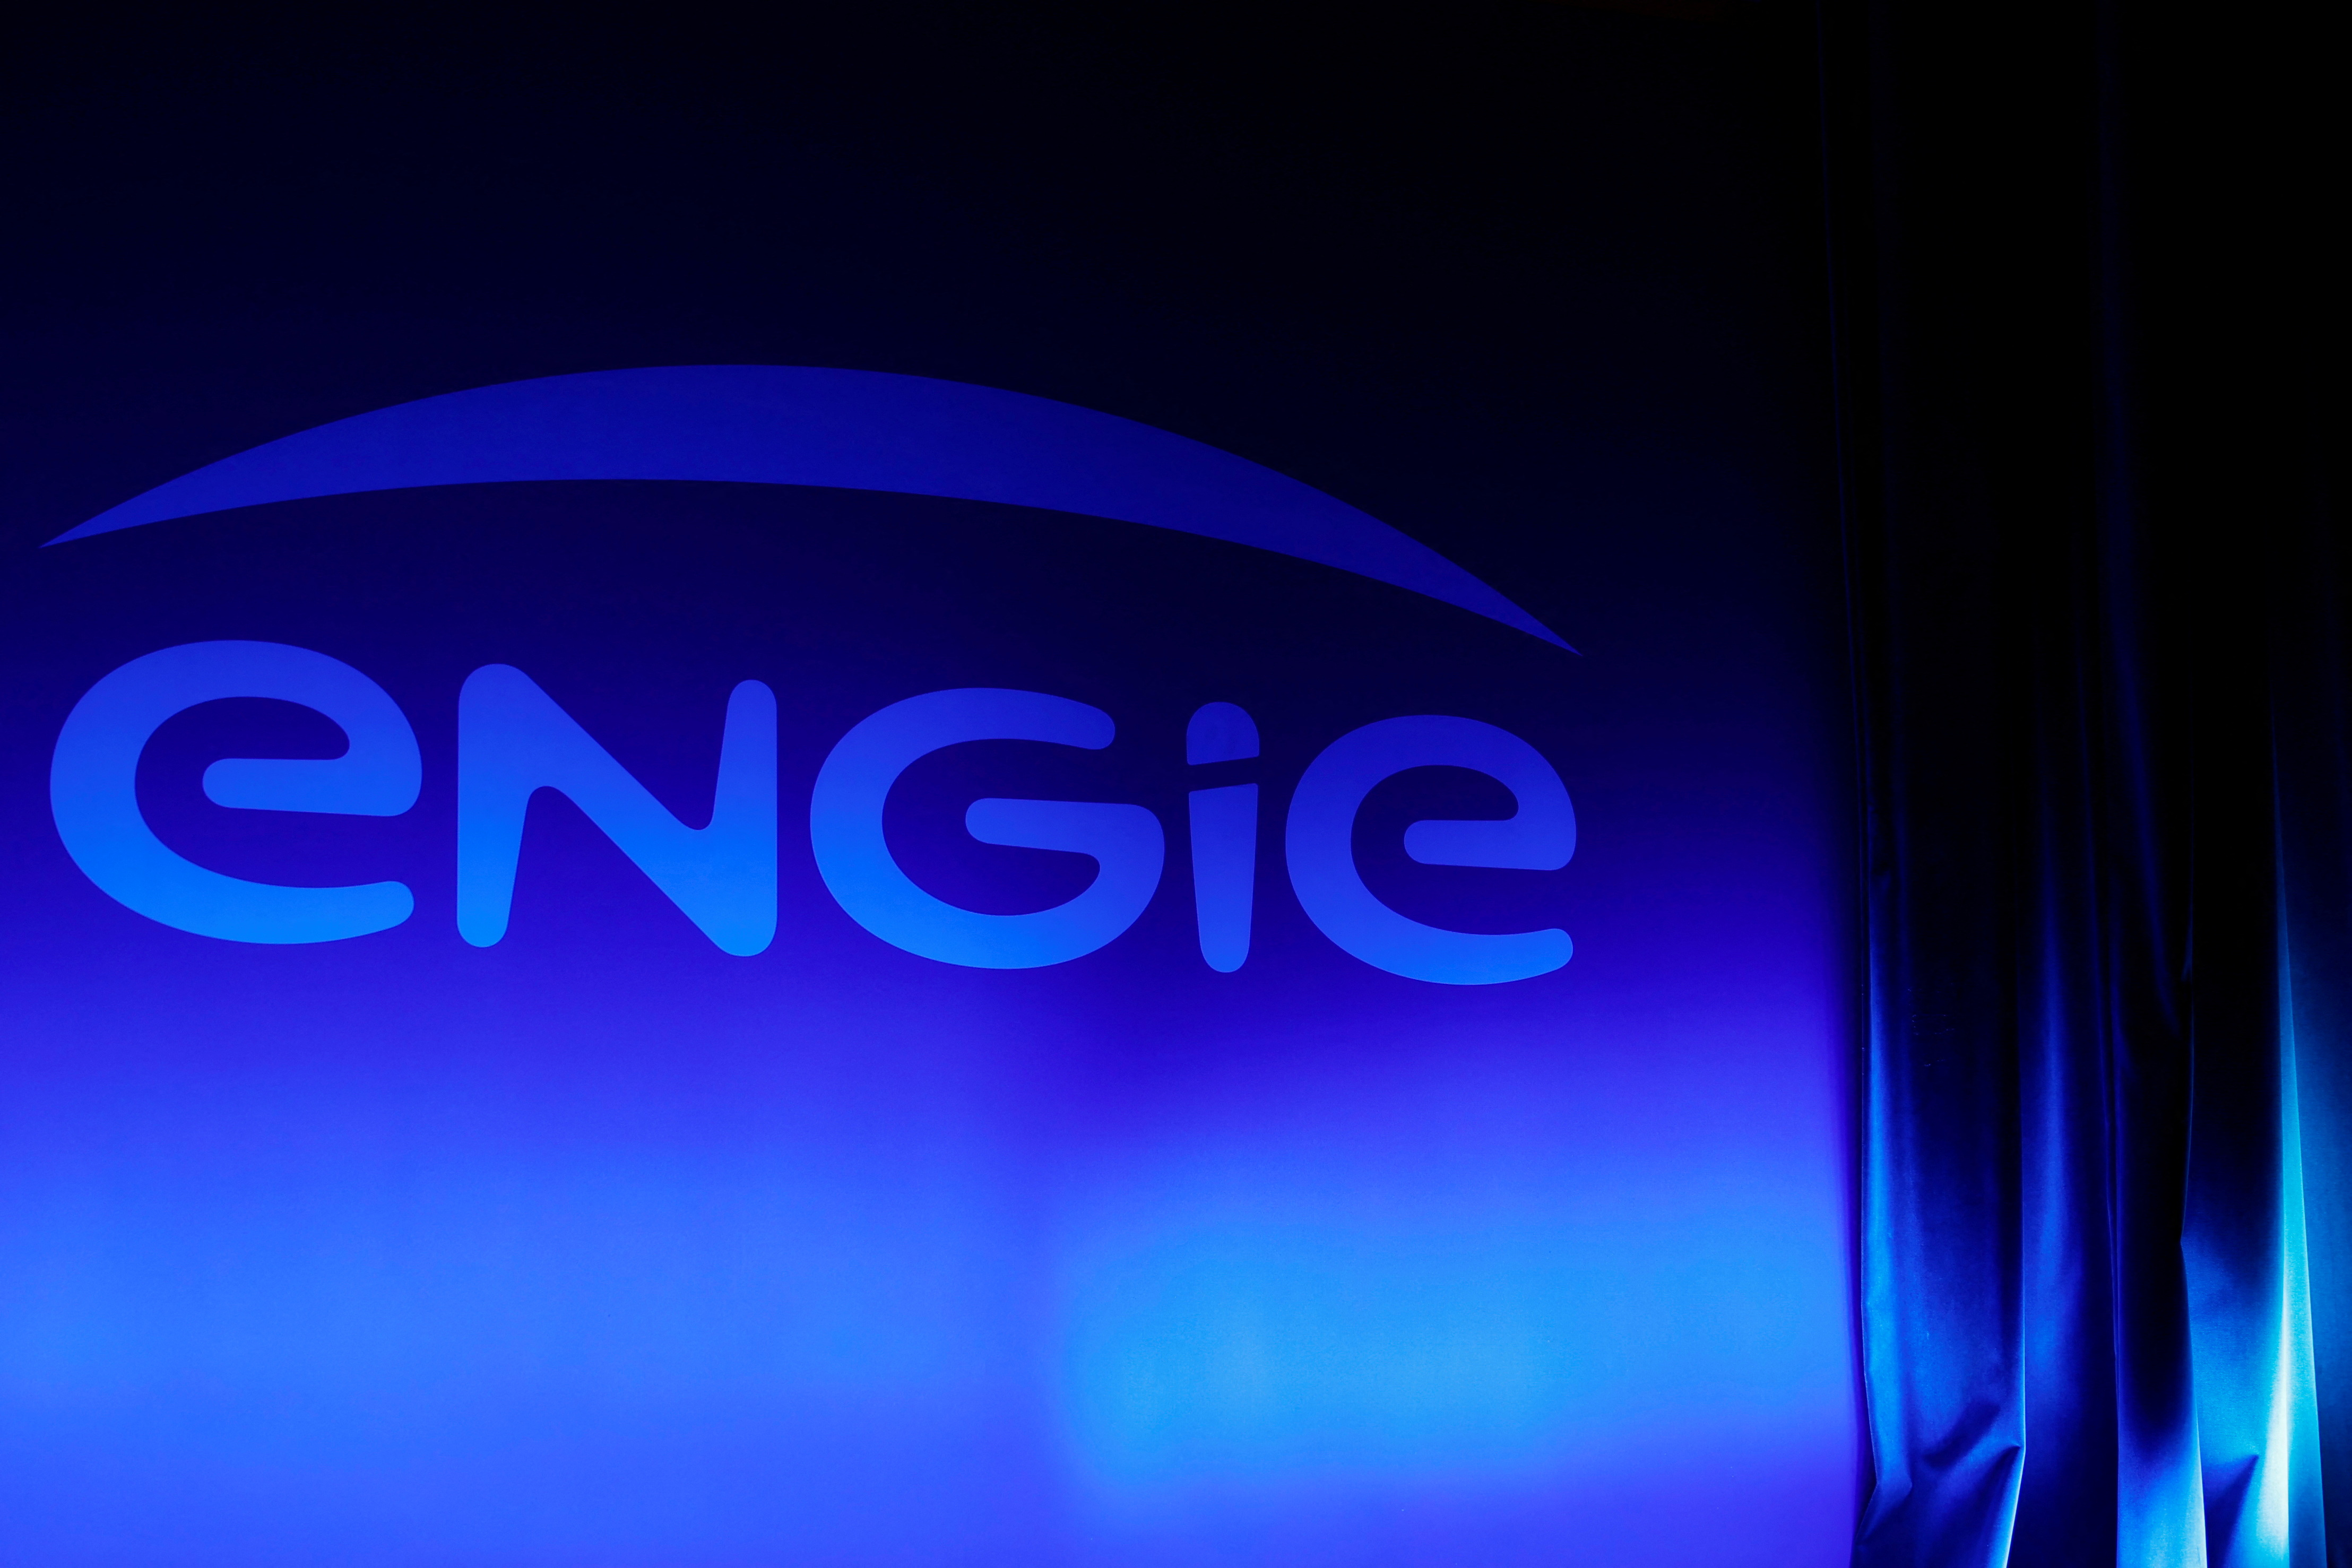 Stockage par batterie : Engie acquiert Broad Reach Power aux Etats-Unis